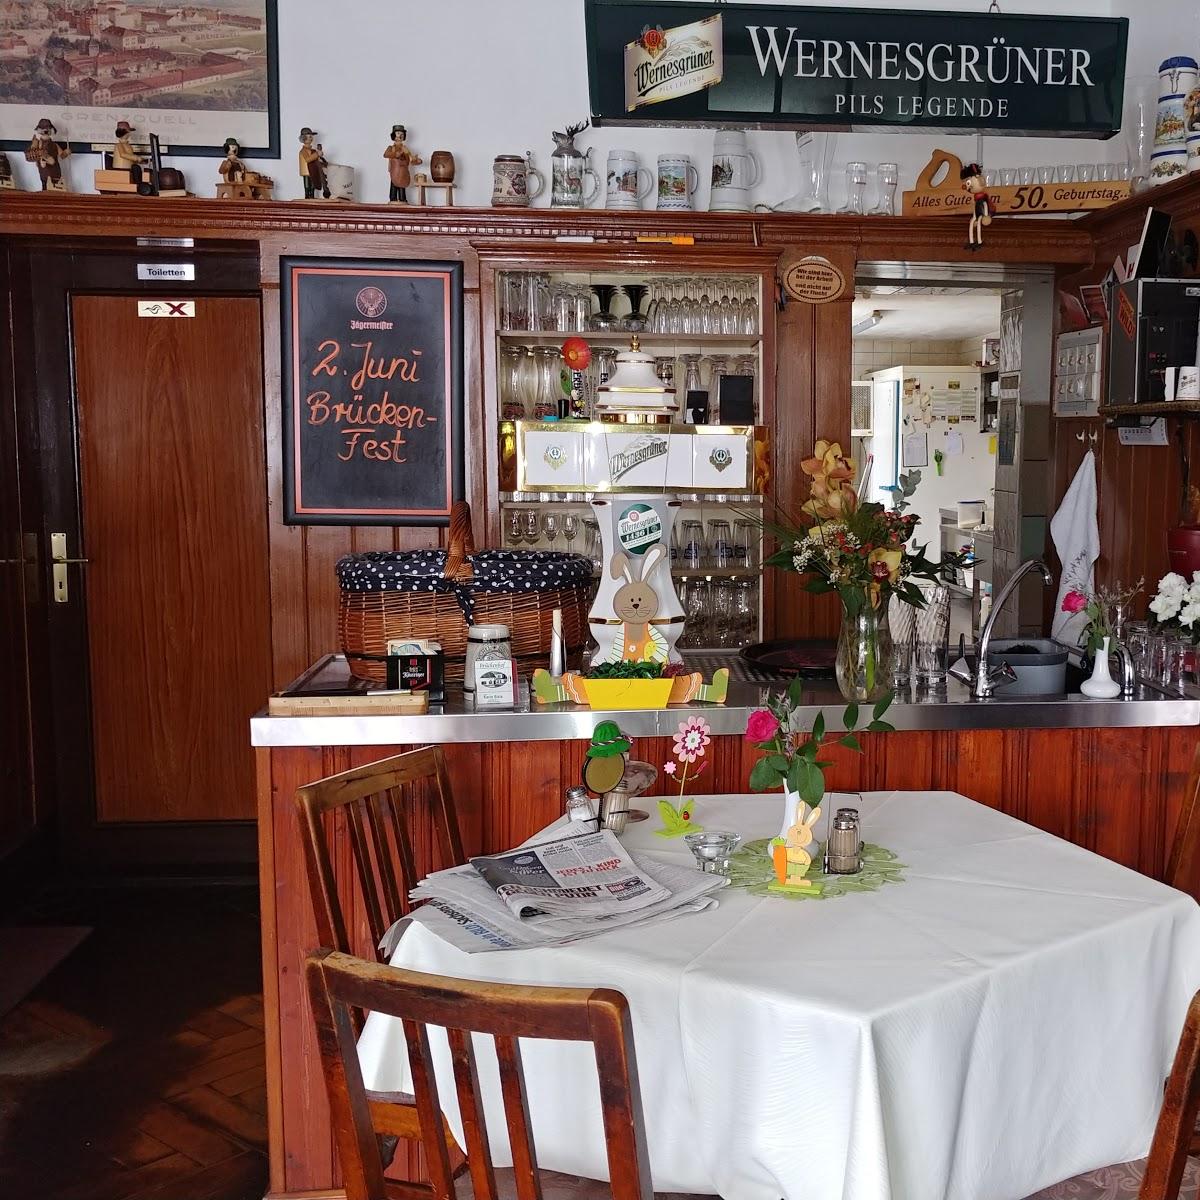 Restaurant "Gaststätte Brückenhof" in Schneeberg